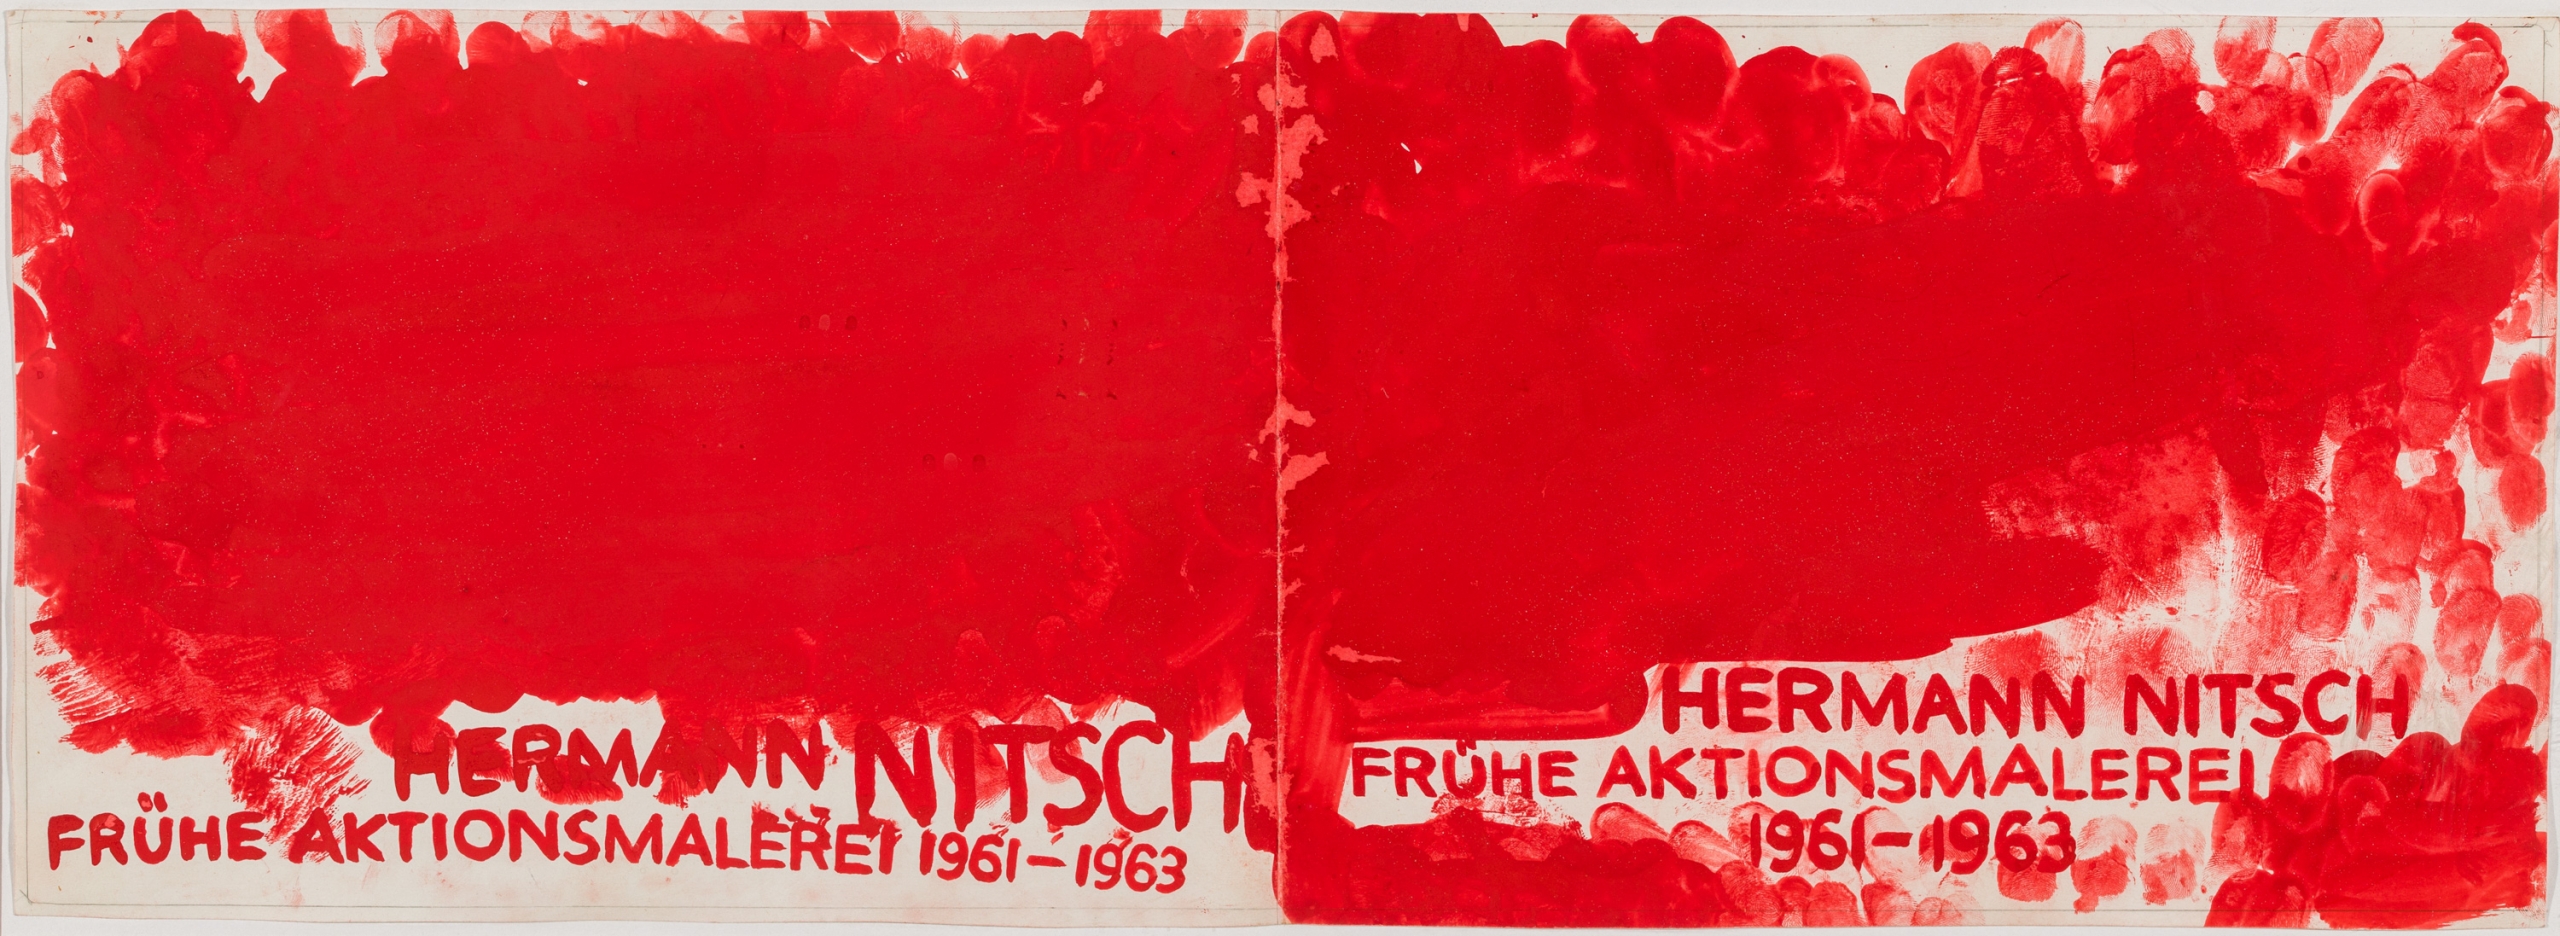 Hermann Nitsch, Ohne Titel (2 Entwürfe für "HERMANN NITSCH FRÜHE AKTIONSMALEREI 1961-1963") / untitled (2 studies)